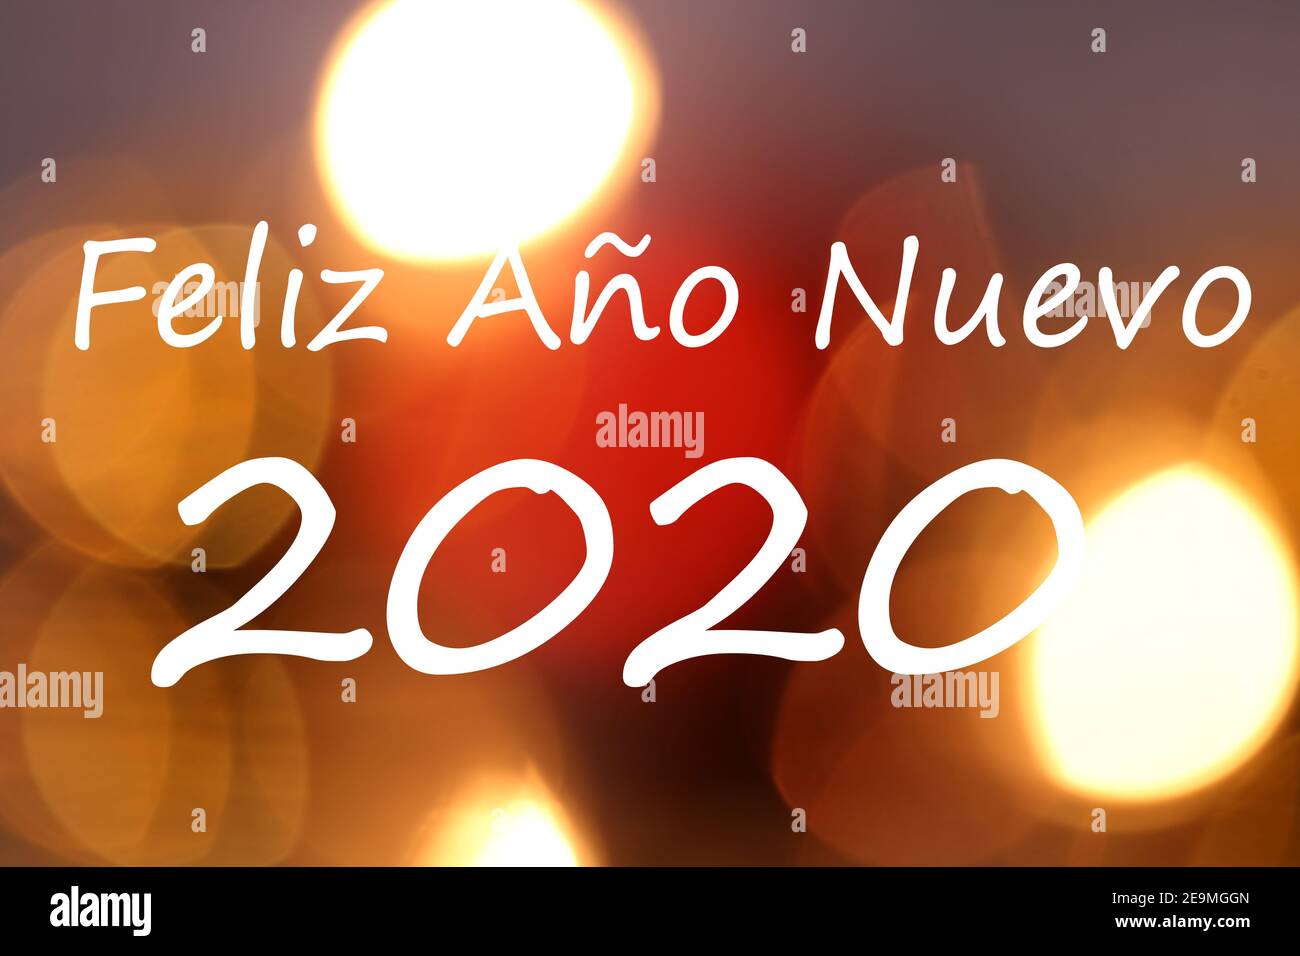 Spanische Neujahrs-Grüße (Feliz Ano Nuevo)´s Stockfoto